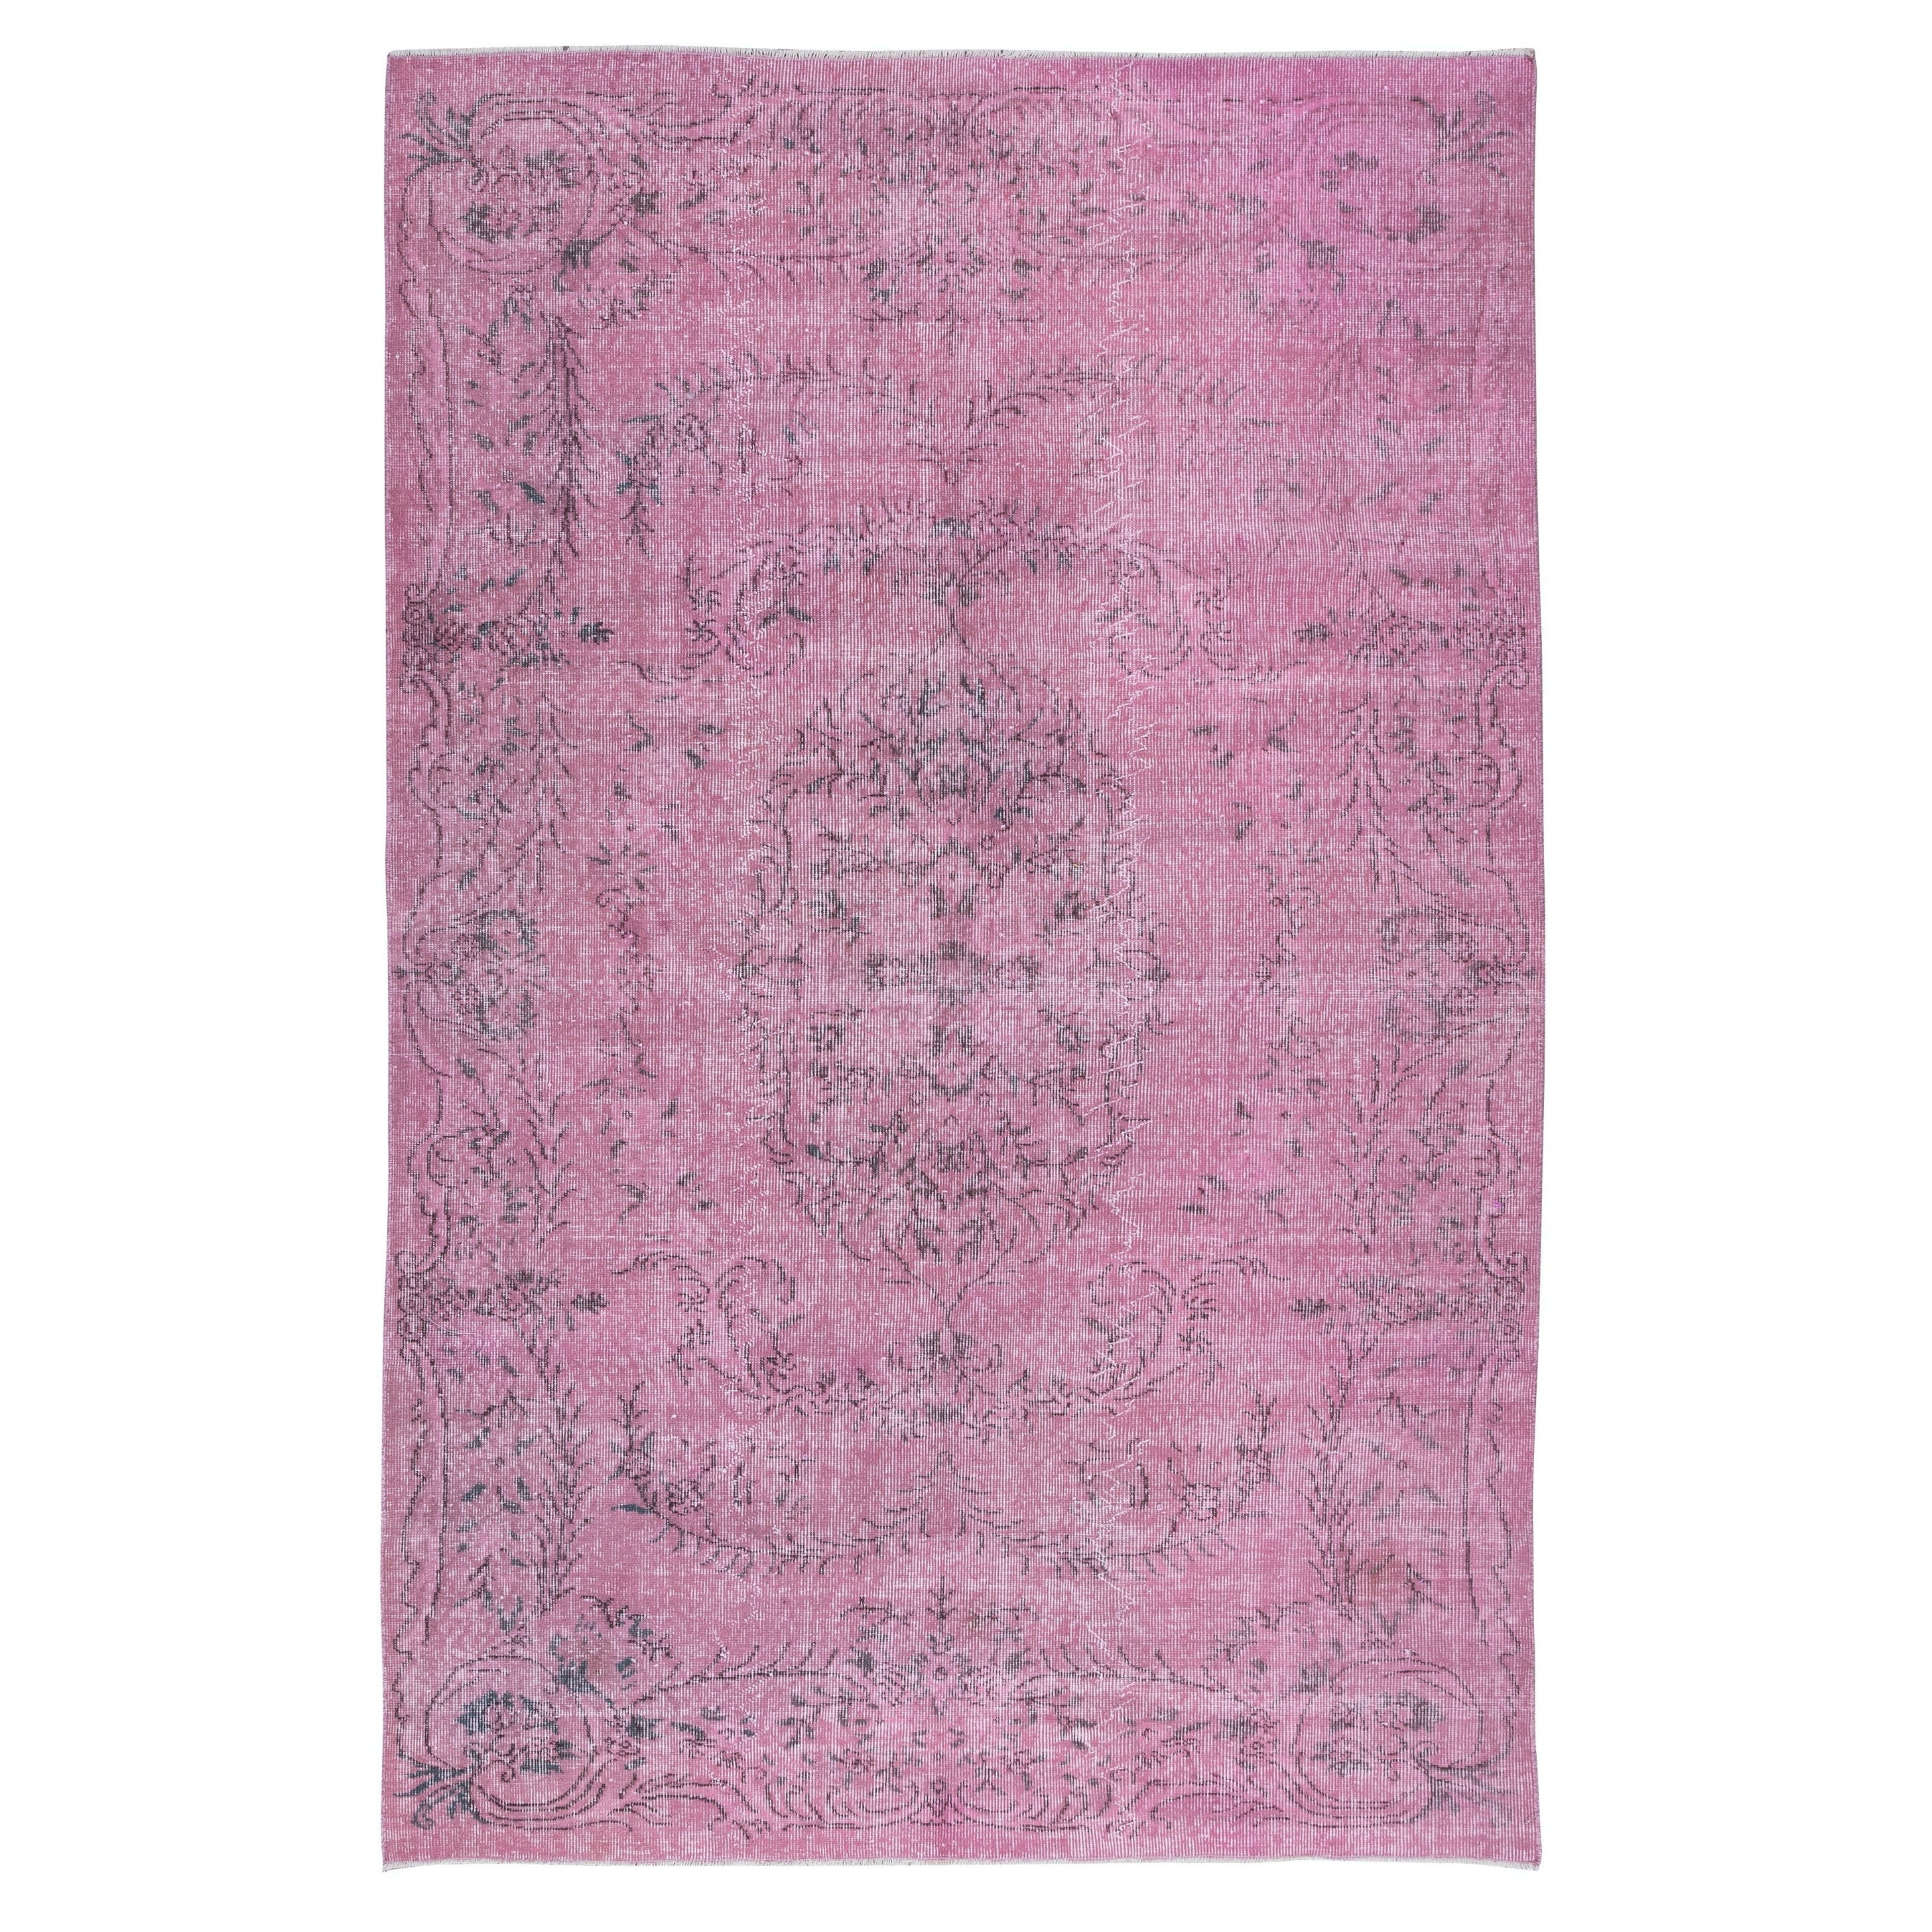 5.8x9.2 Ft Light Pink Wool Area Rug for Modern Interiors, Handmade in Turkey (Tapis de laine rose clair pour intérieurs modernes, fait à la main en Turquie) en vente